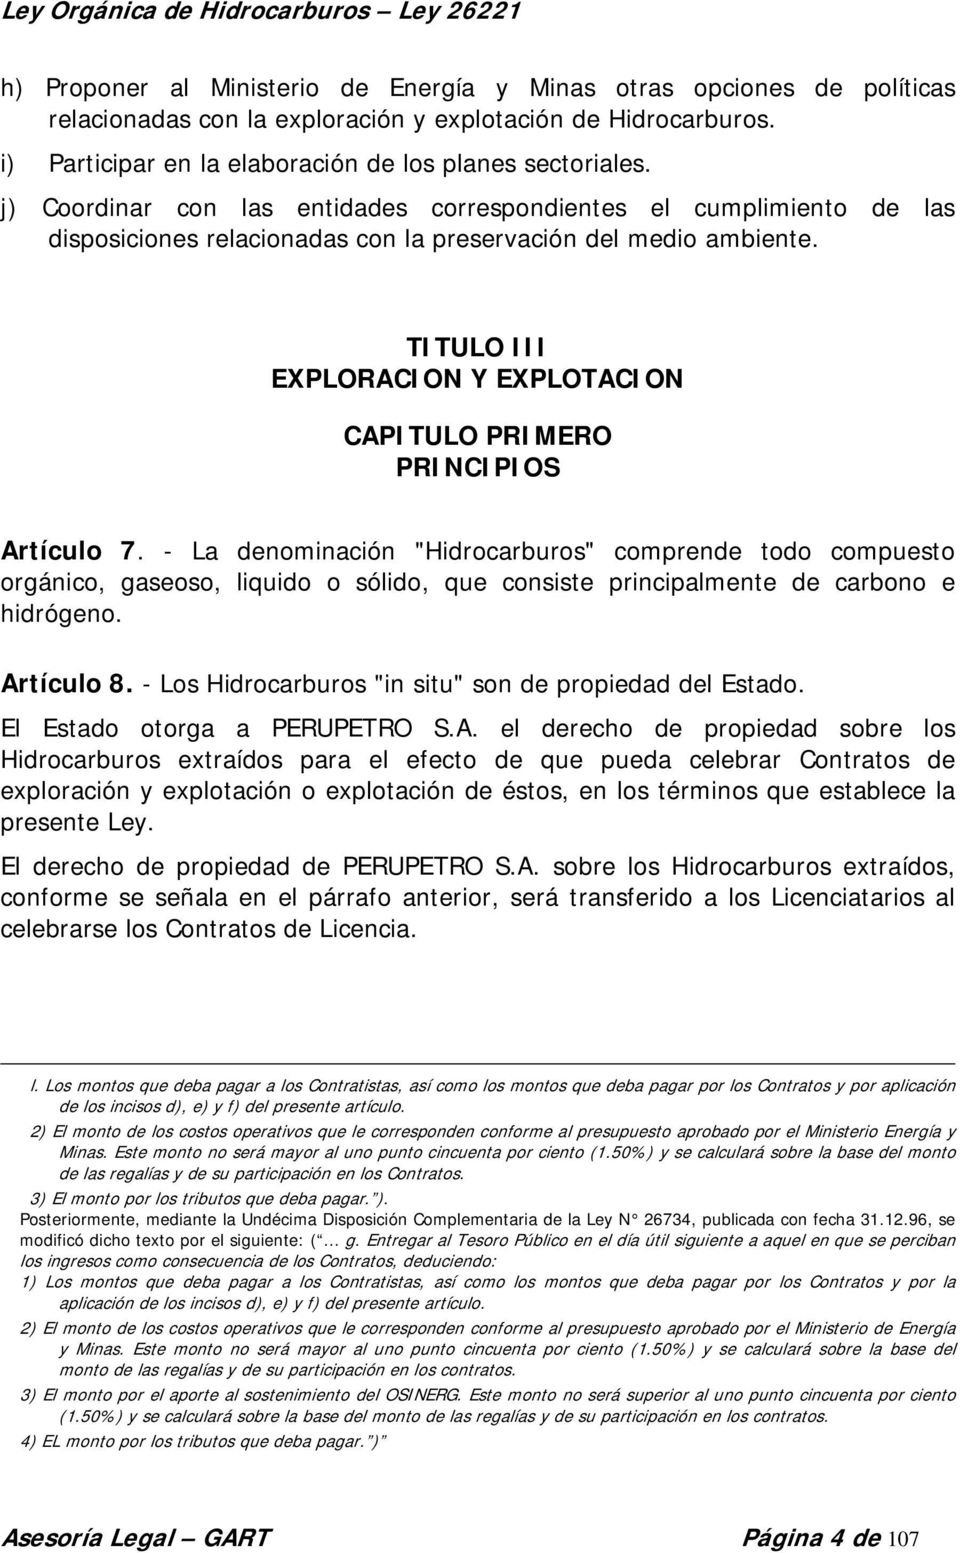 TITULO III EXPLORACION Y EXPLOTACION CAPITULO PRIMERO PRINCIPIOS Artículo 7.